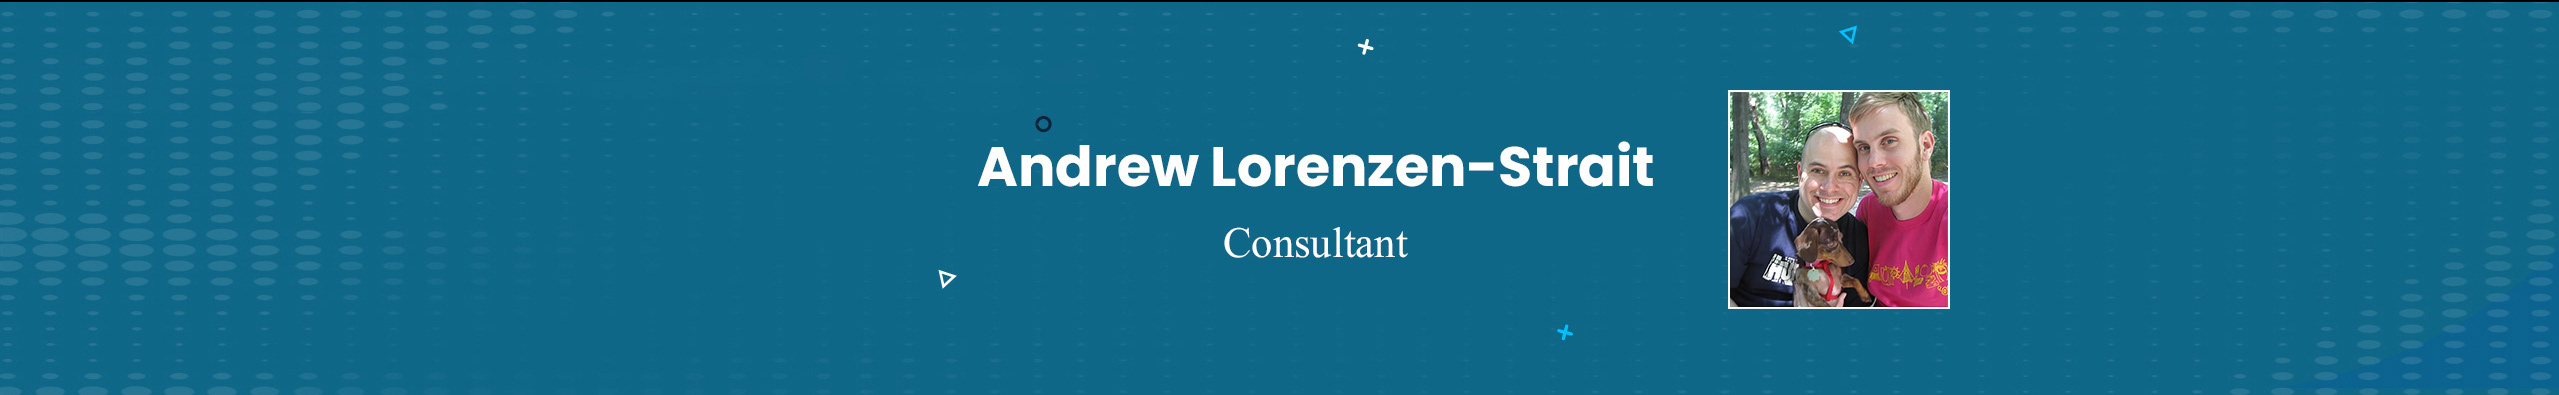 Andrew Lorenzen-Strait profil başlığı